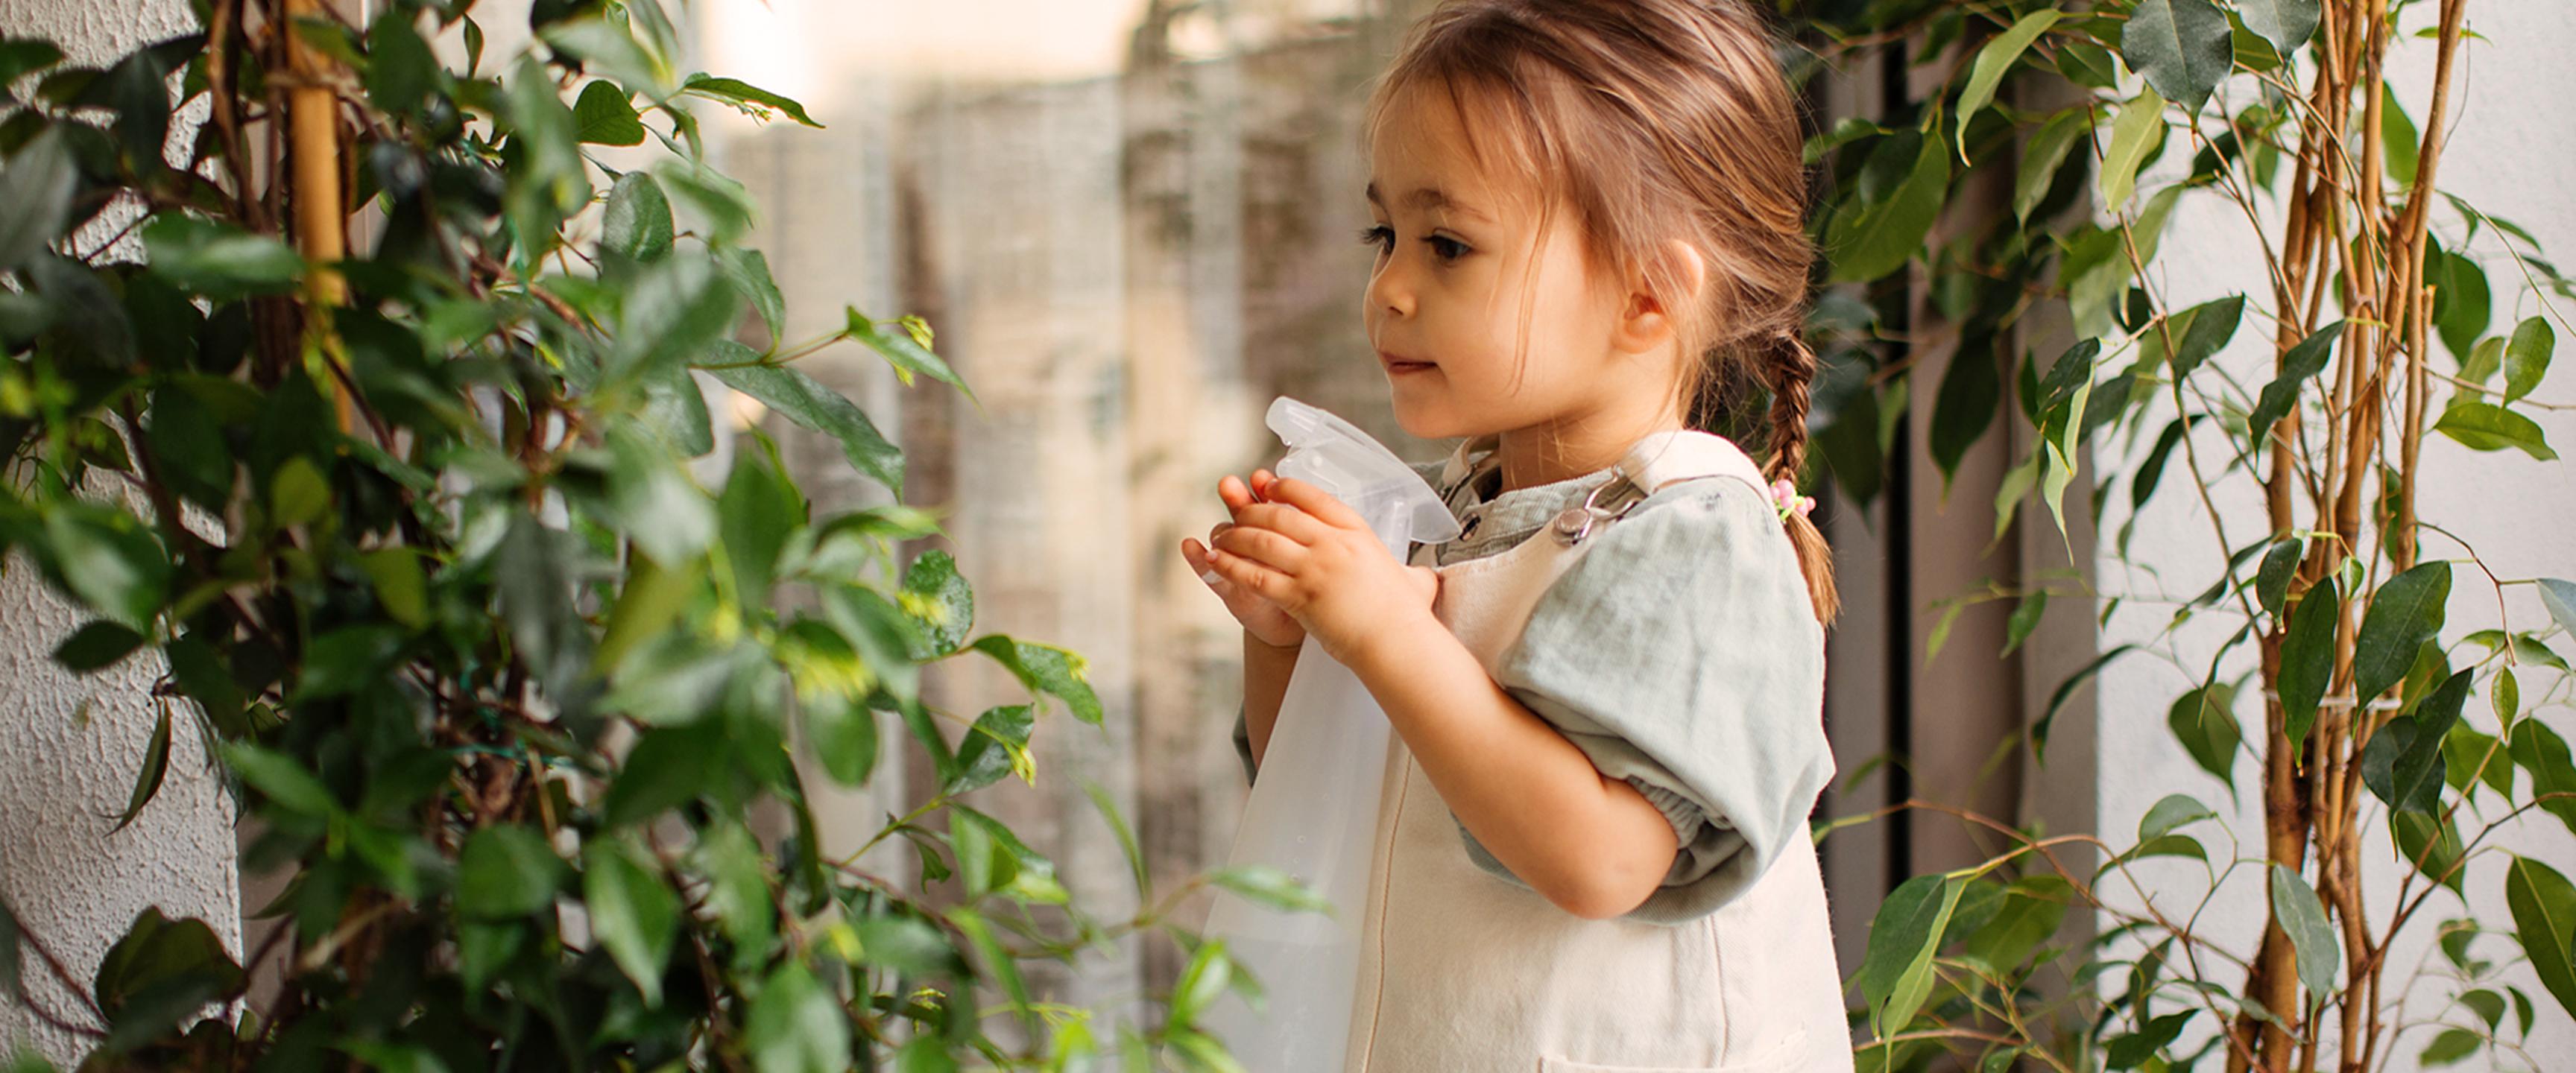 小女孩用噴霧瓶給植物澆水。